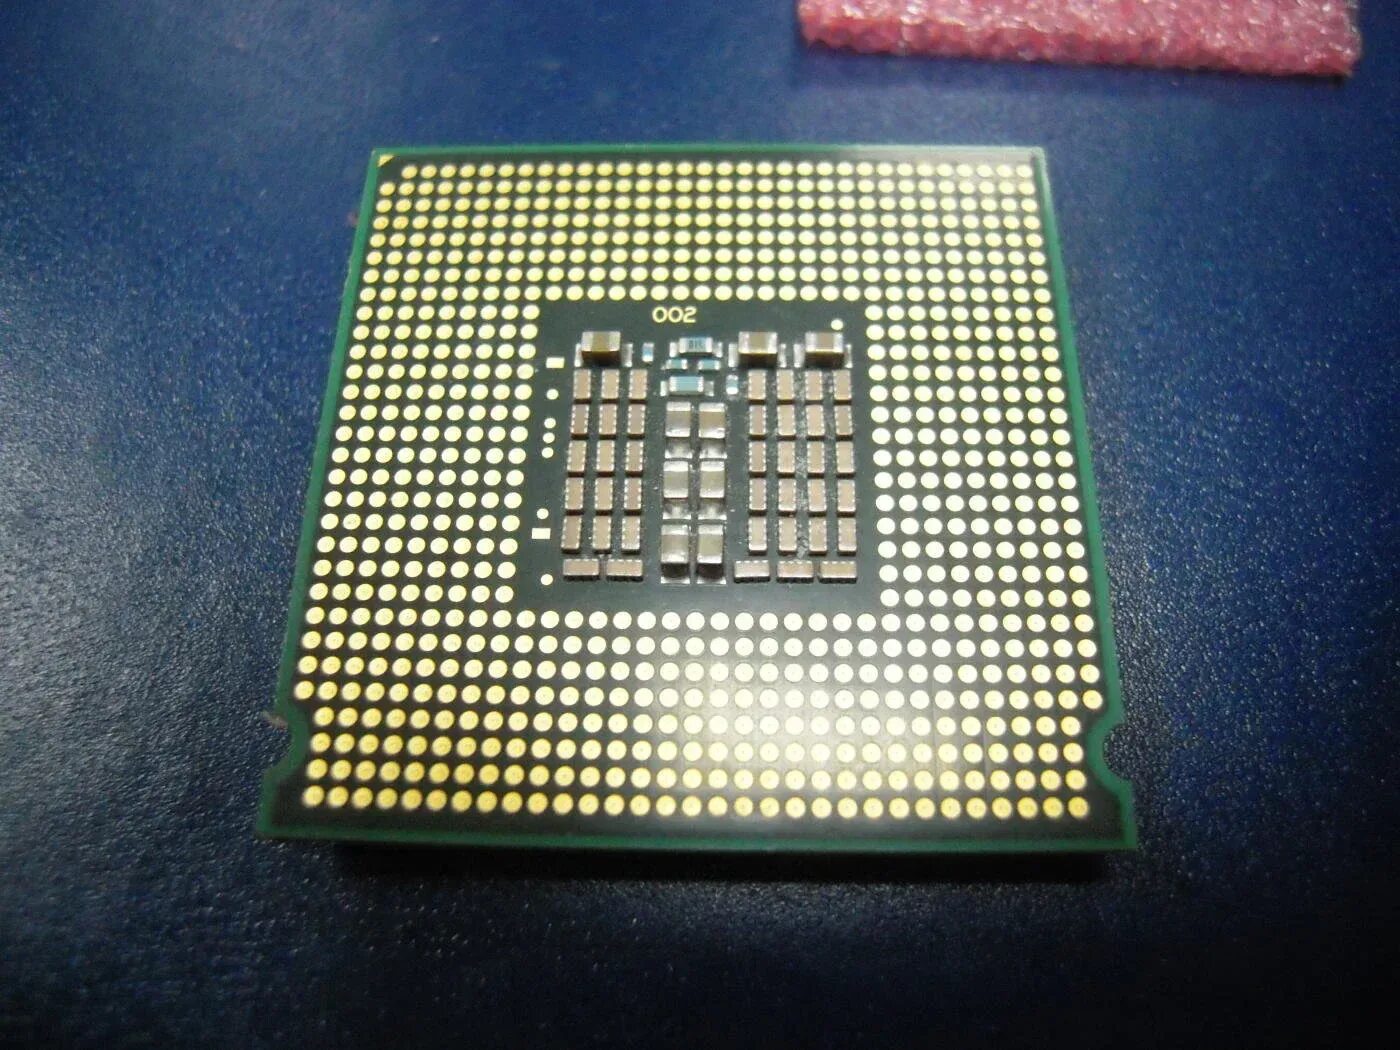 771 сокет. Xeon на 775 сокет. Xeon 5110. Самый мощный процессор на 775 сокет.